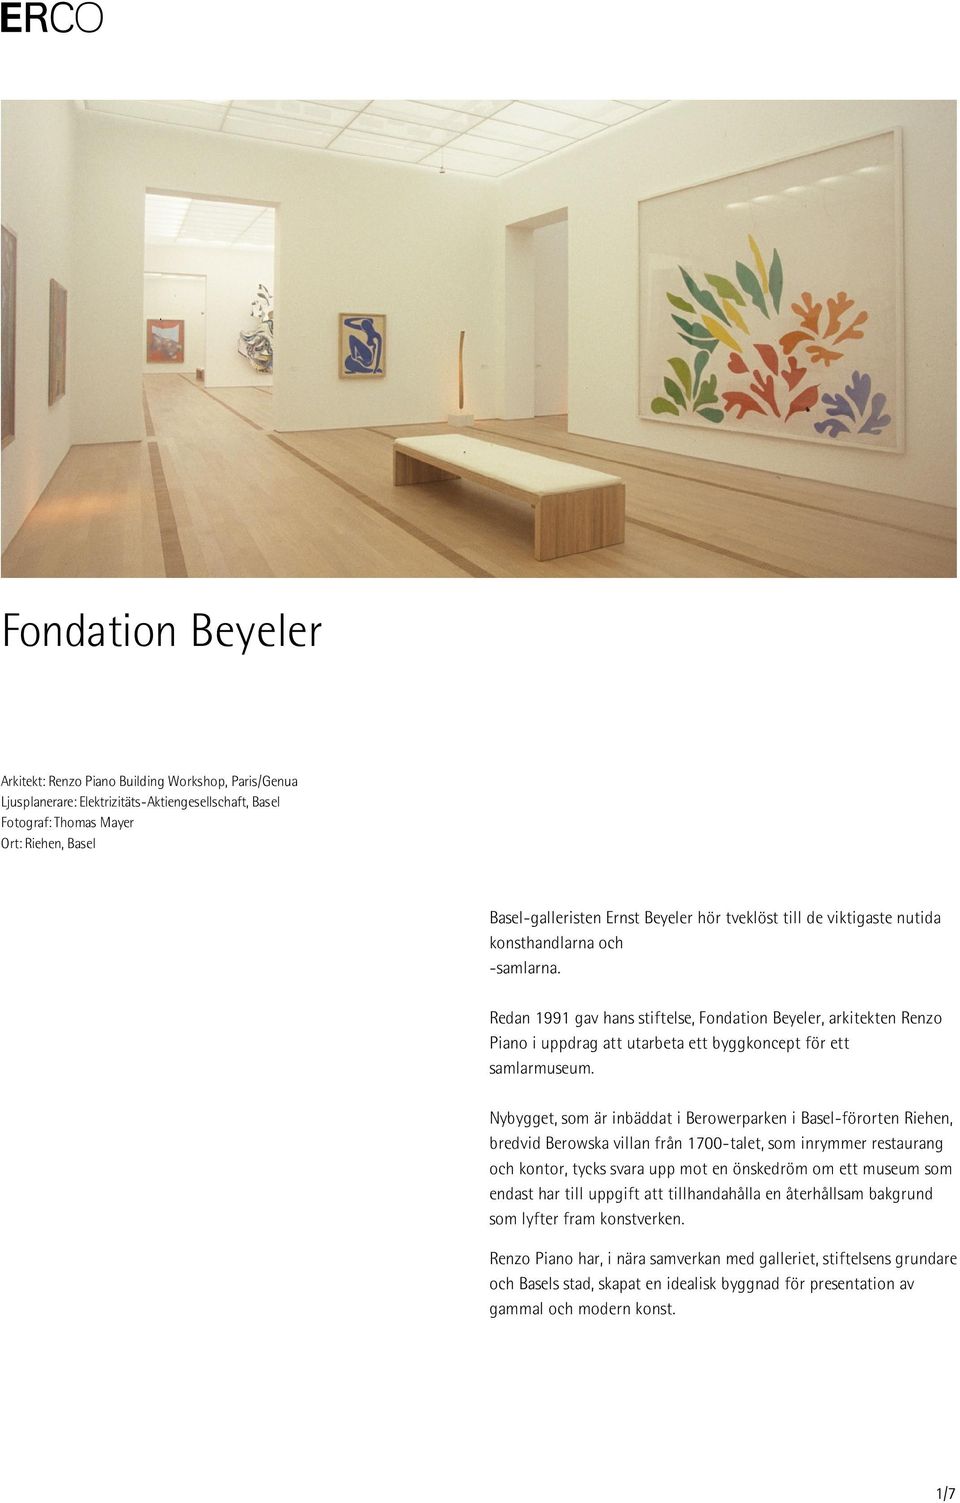 Redan 1991 gav hans stiftelse, Fondation Beyeler, arkitekten Renzo Piano i uppdrag att utarbeta ett byggkoncept för ett samlarmuseum.